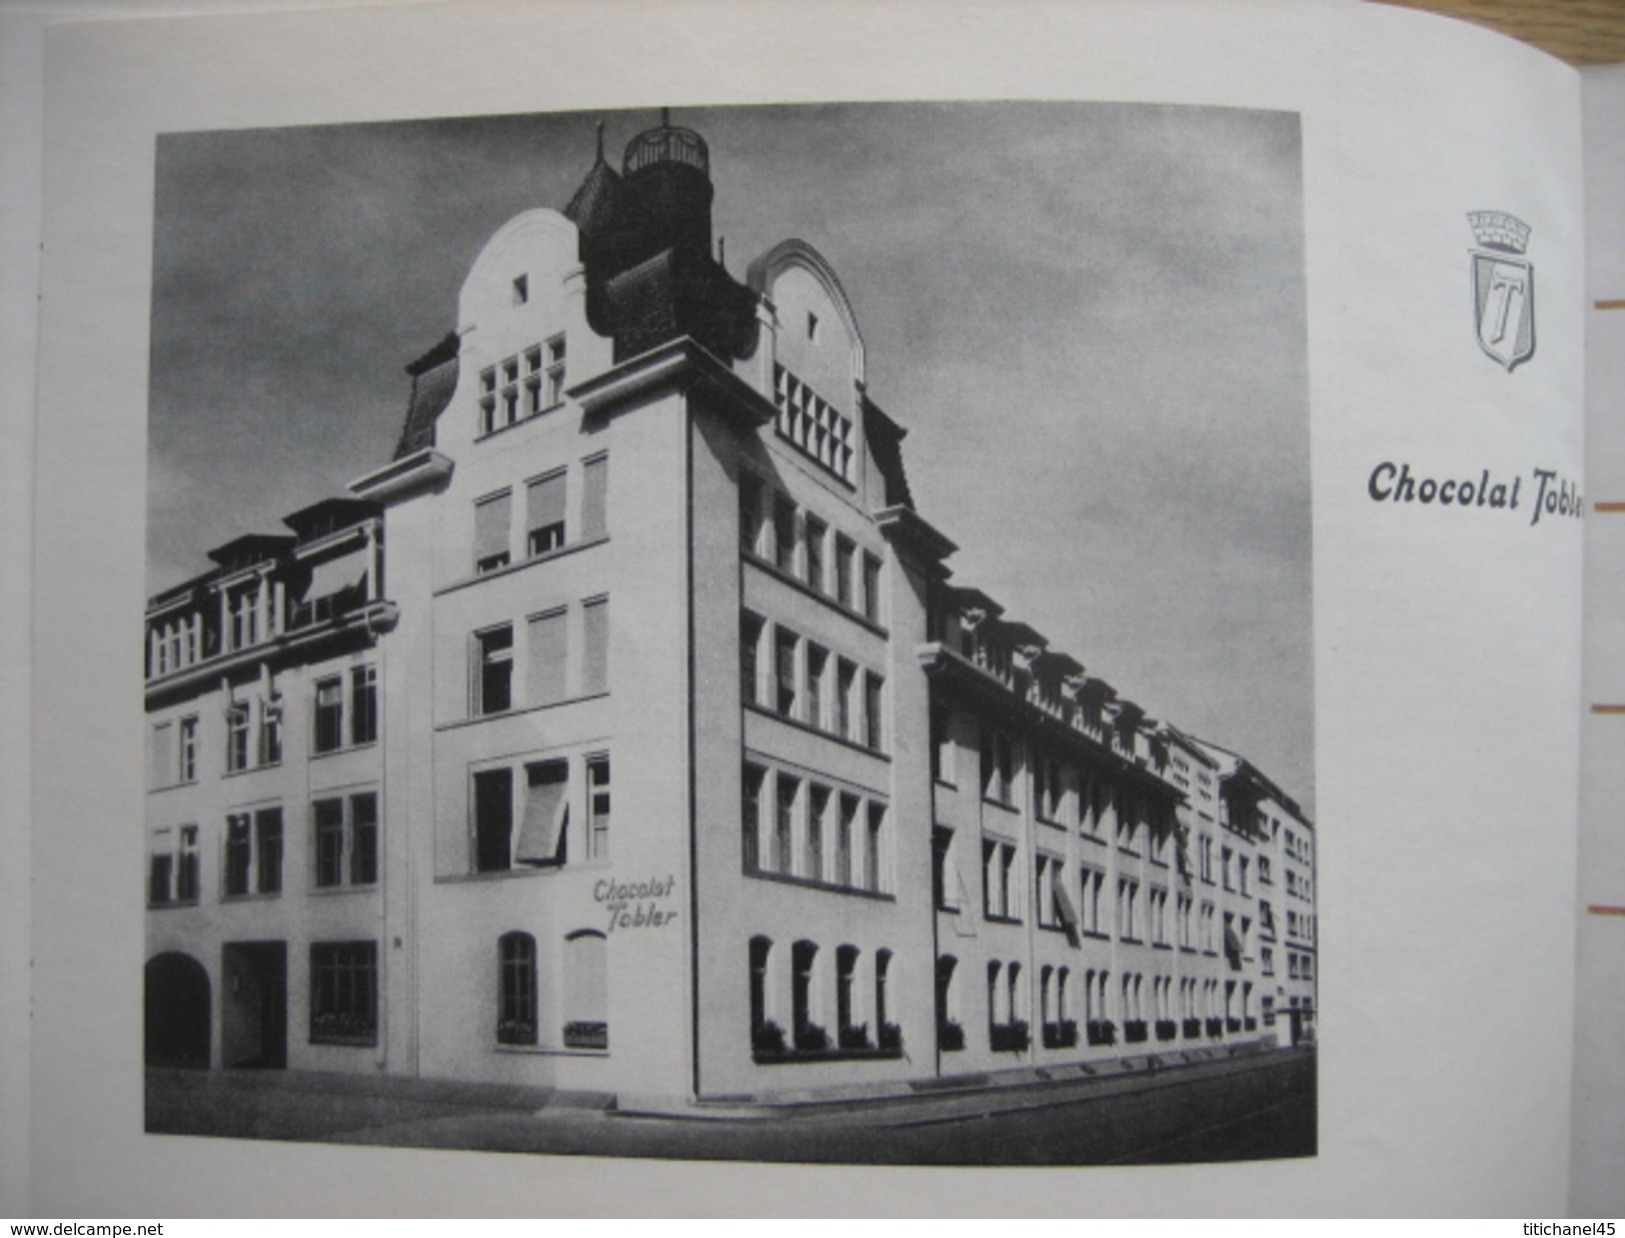 Catalogue publicitaire édité en 1958 par CHOCOSUISSE Union des fabricants suisses de chocolat à BERNE - 52 pages